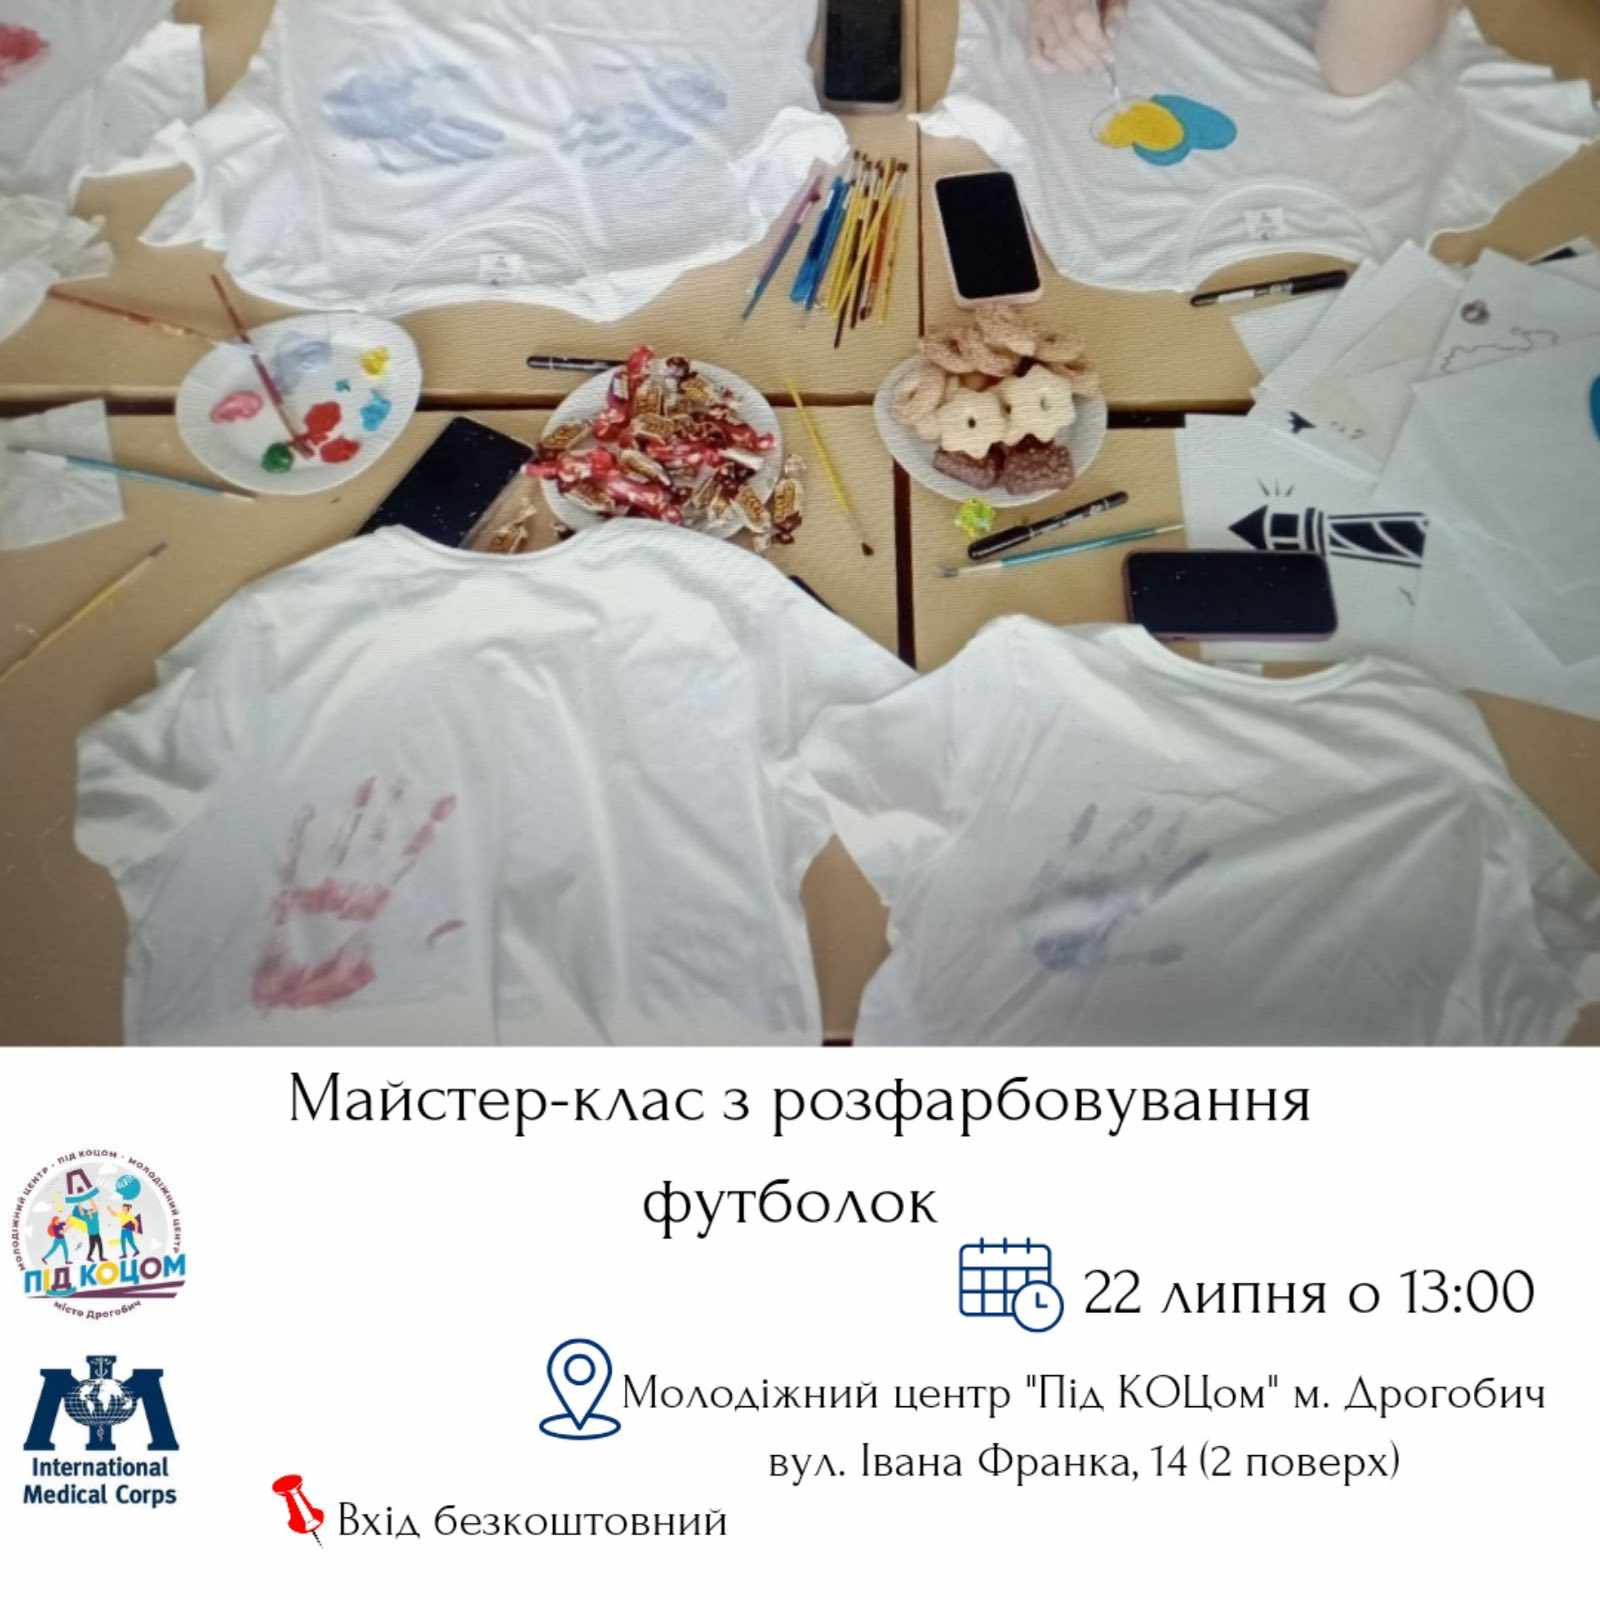 Міжнародний медичний корпус проведене у Дрогобичі безкоштовний майстер-клас: дрогобичанок запрошують до участі